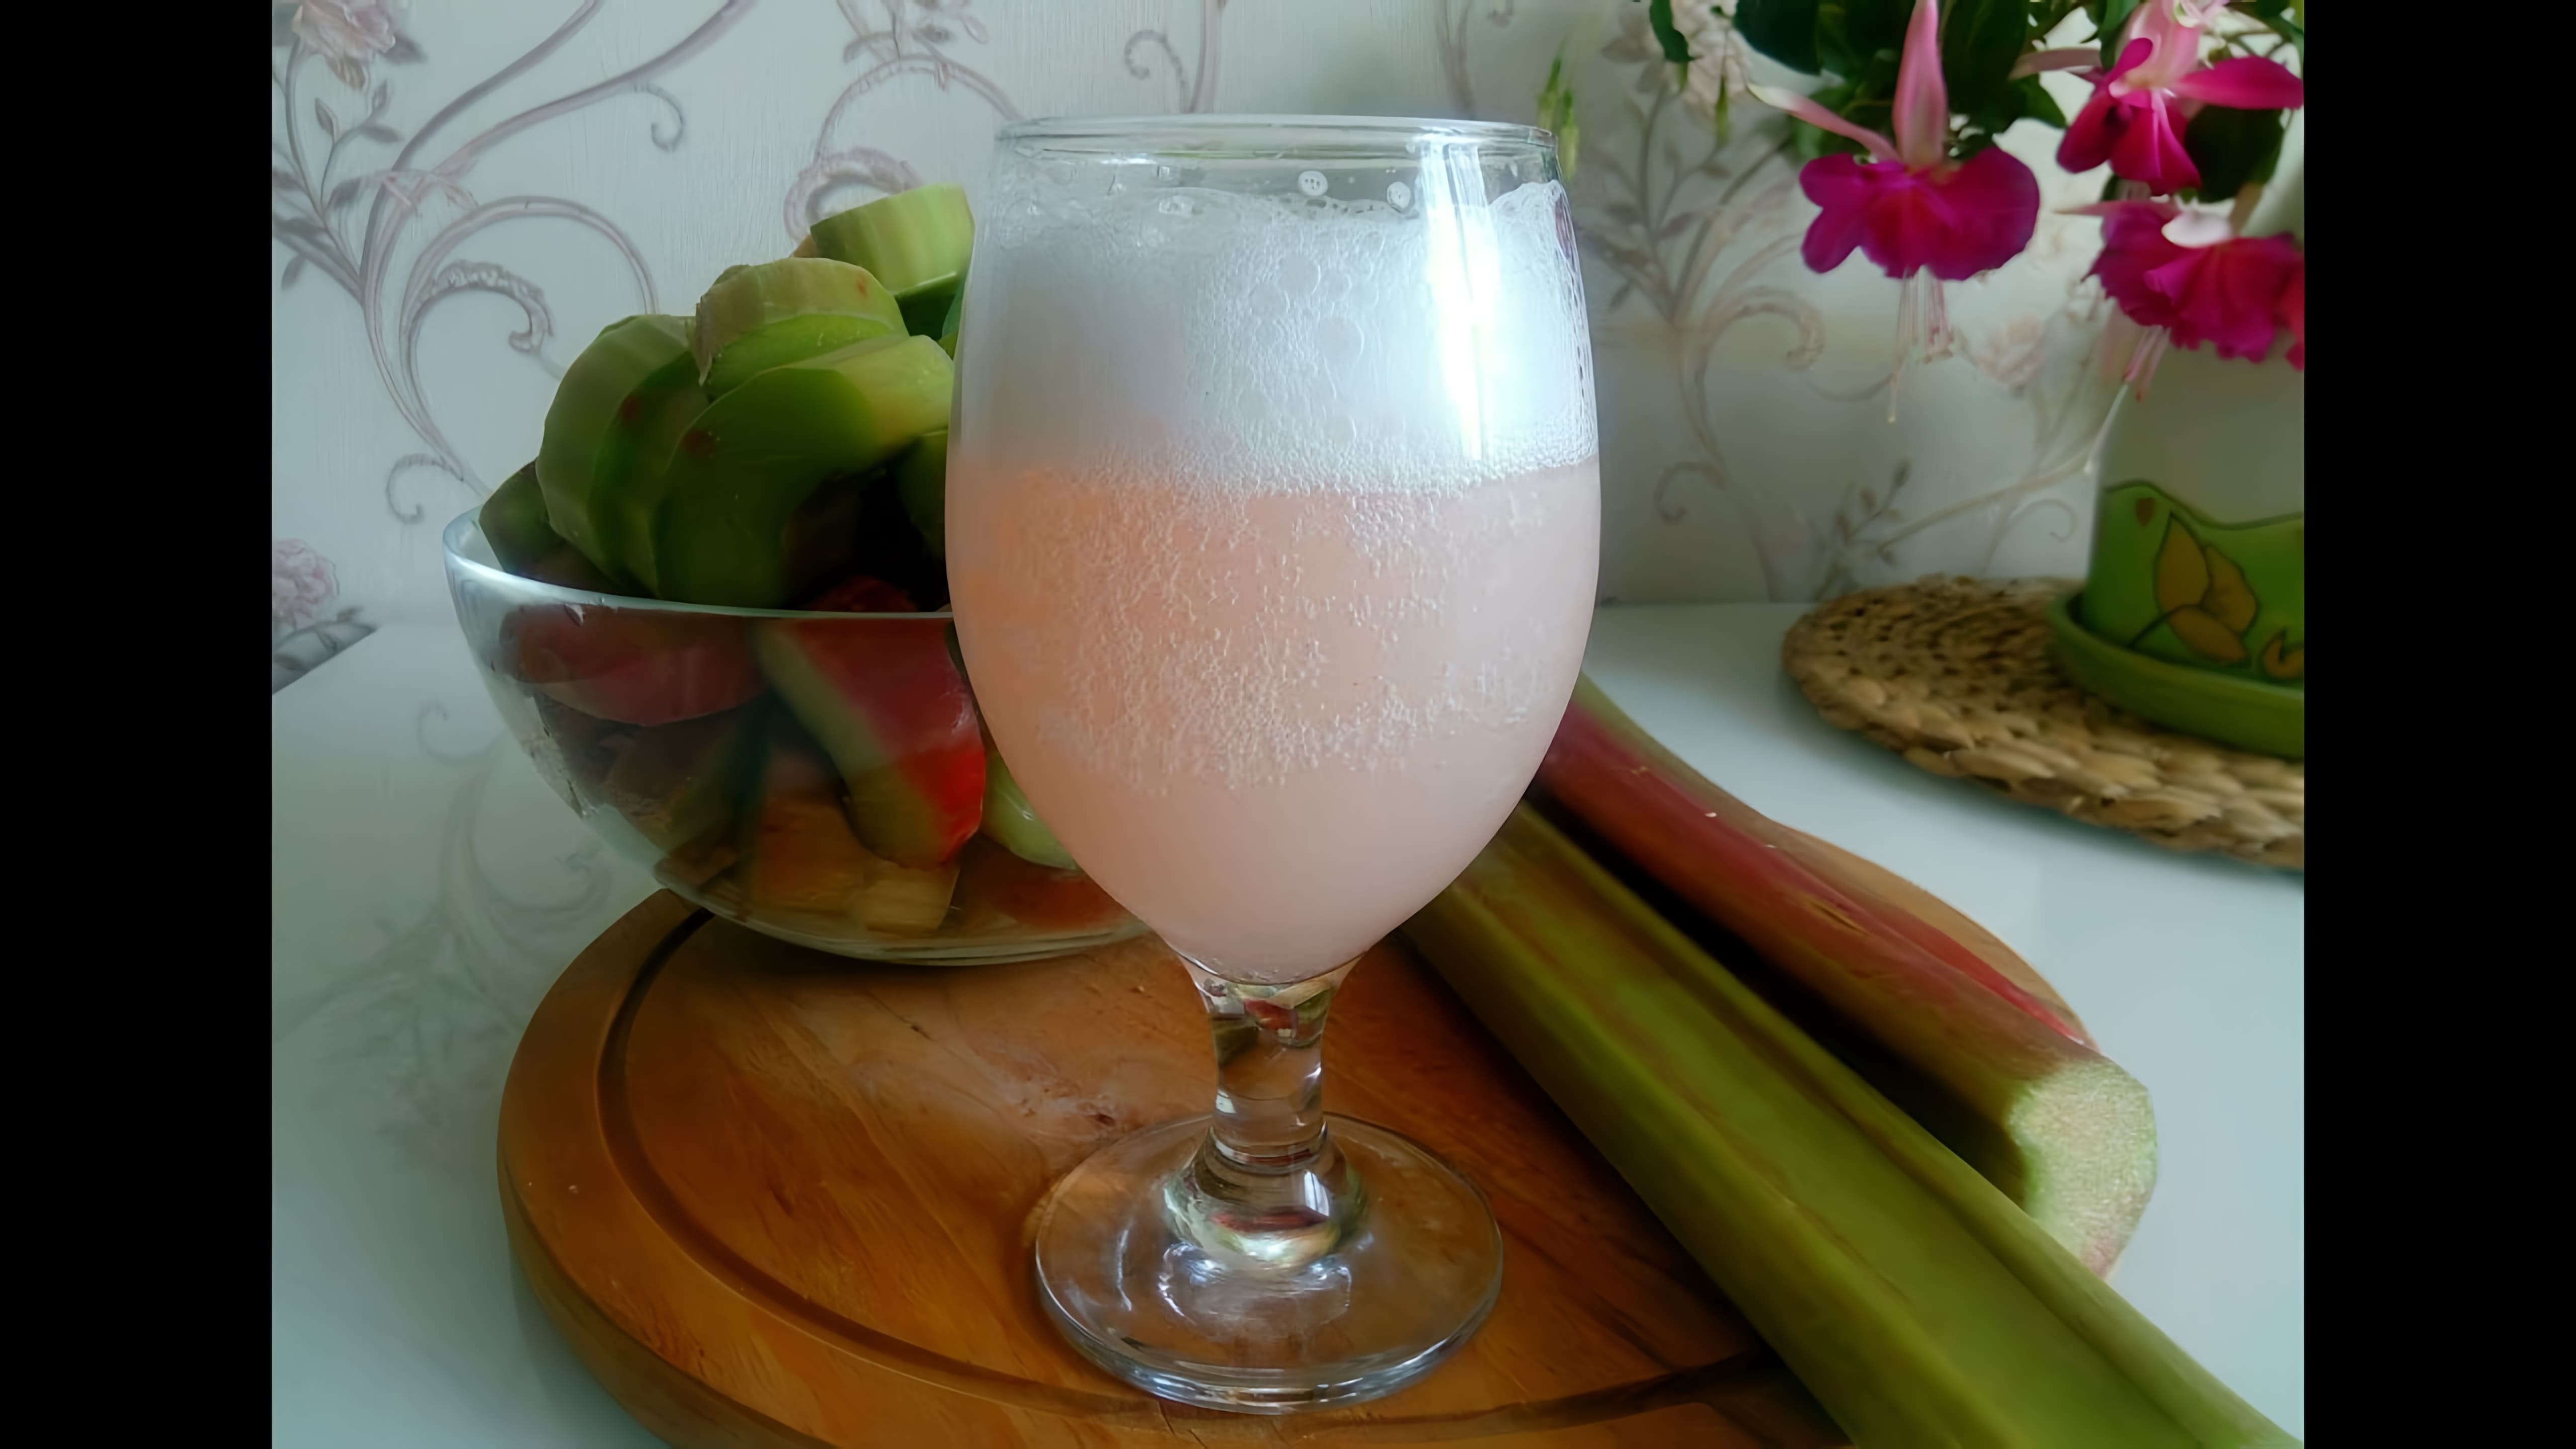 Видео рецепт приготовления кваса из ревеня, который является освежающим и бодрящим напитком, идеальным для жарких летних дней